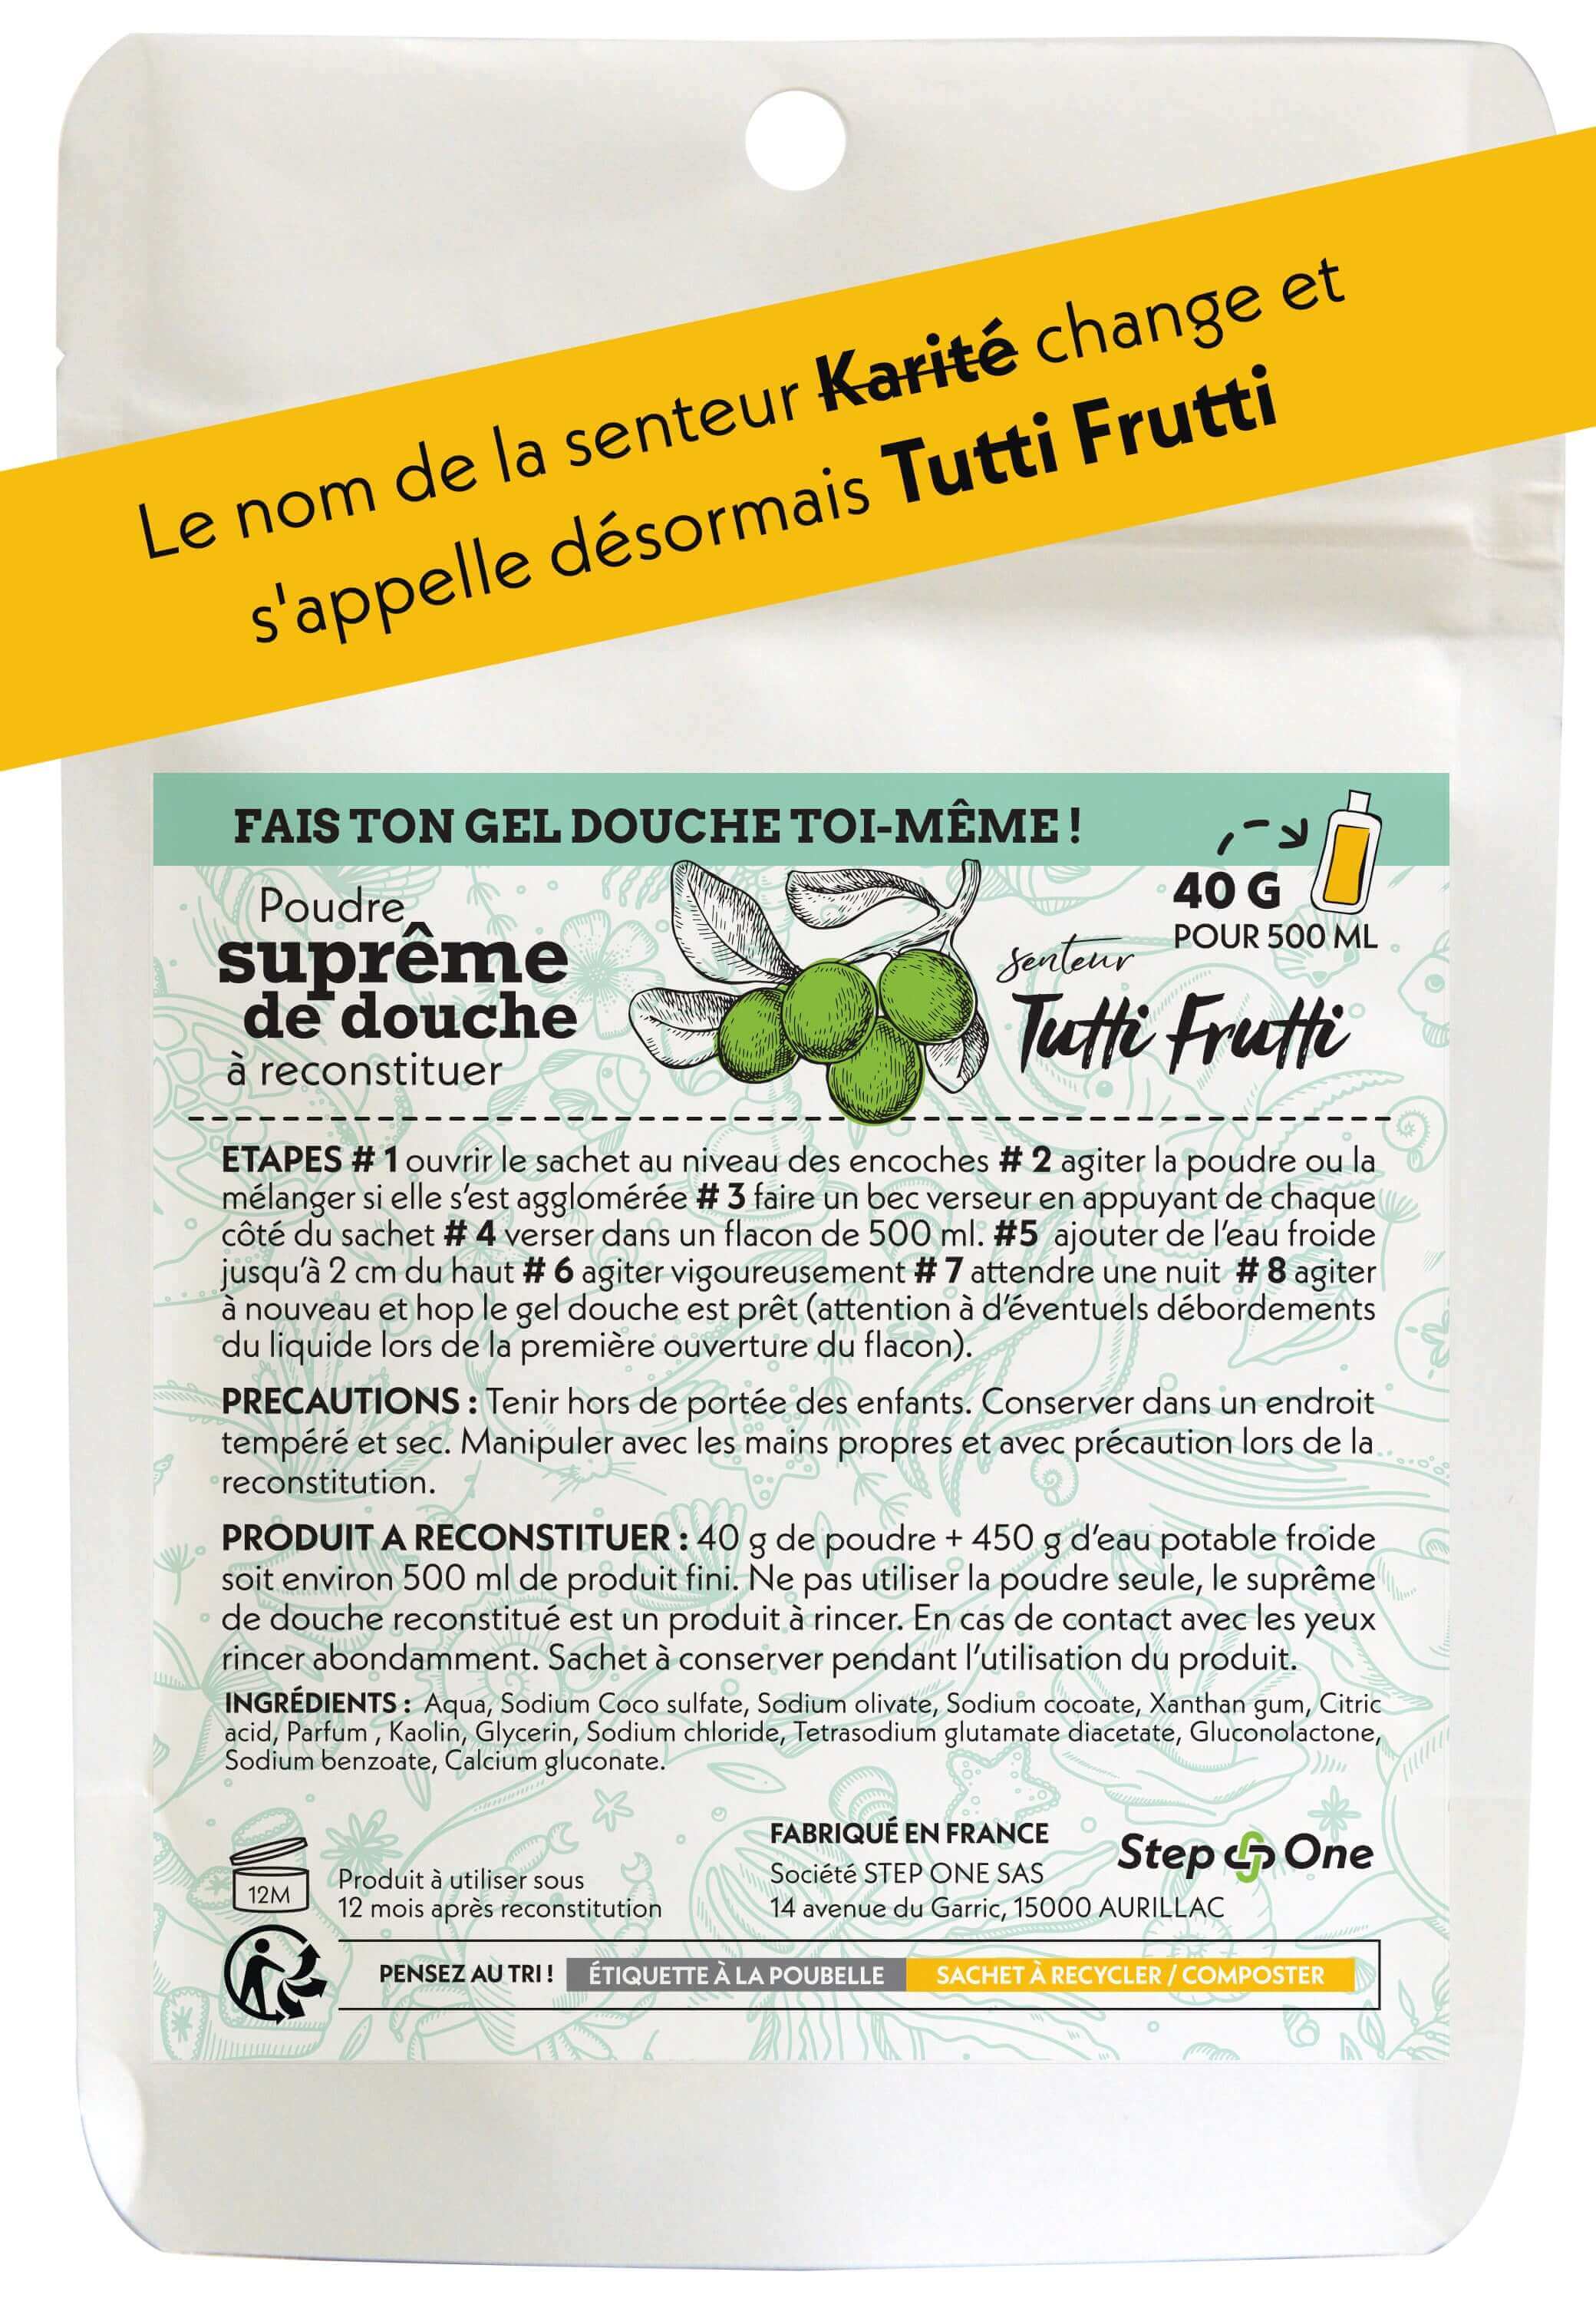 Un emballage de recharge de douche Suprême Tutti frutti avec étiquette